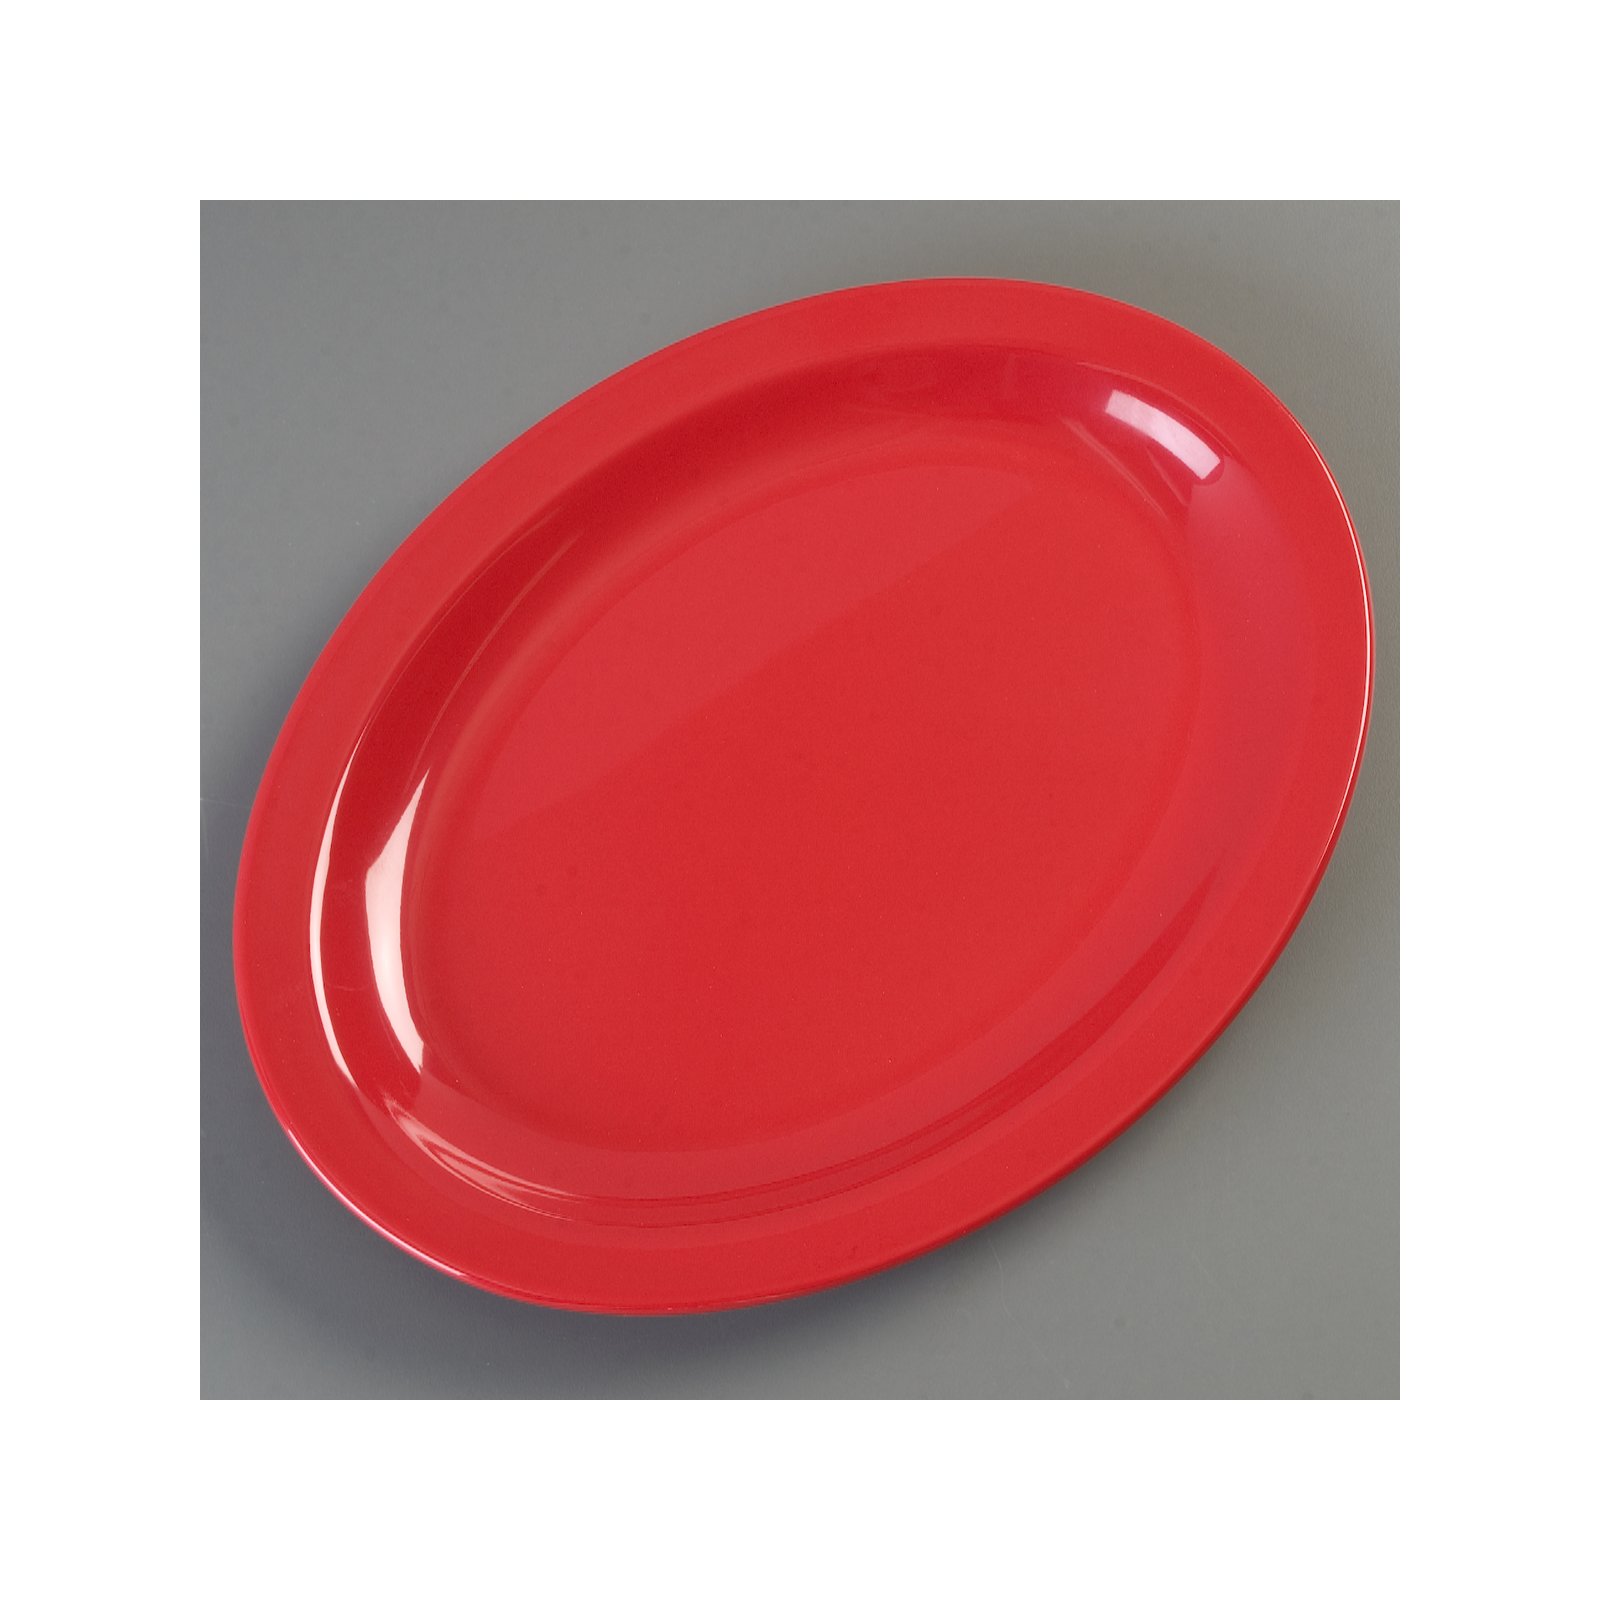 Taipro Enamel Plates Red White Enamel Plates Wagon Enamel Plates